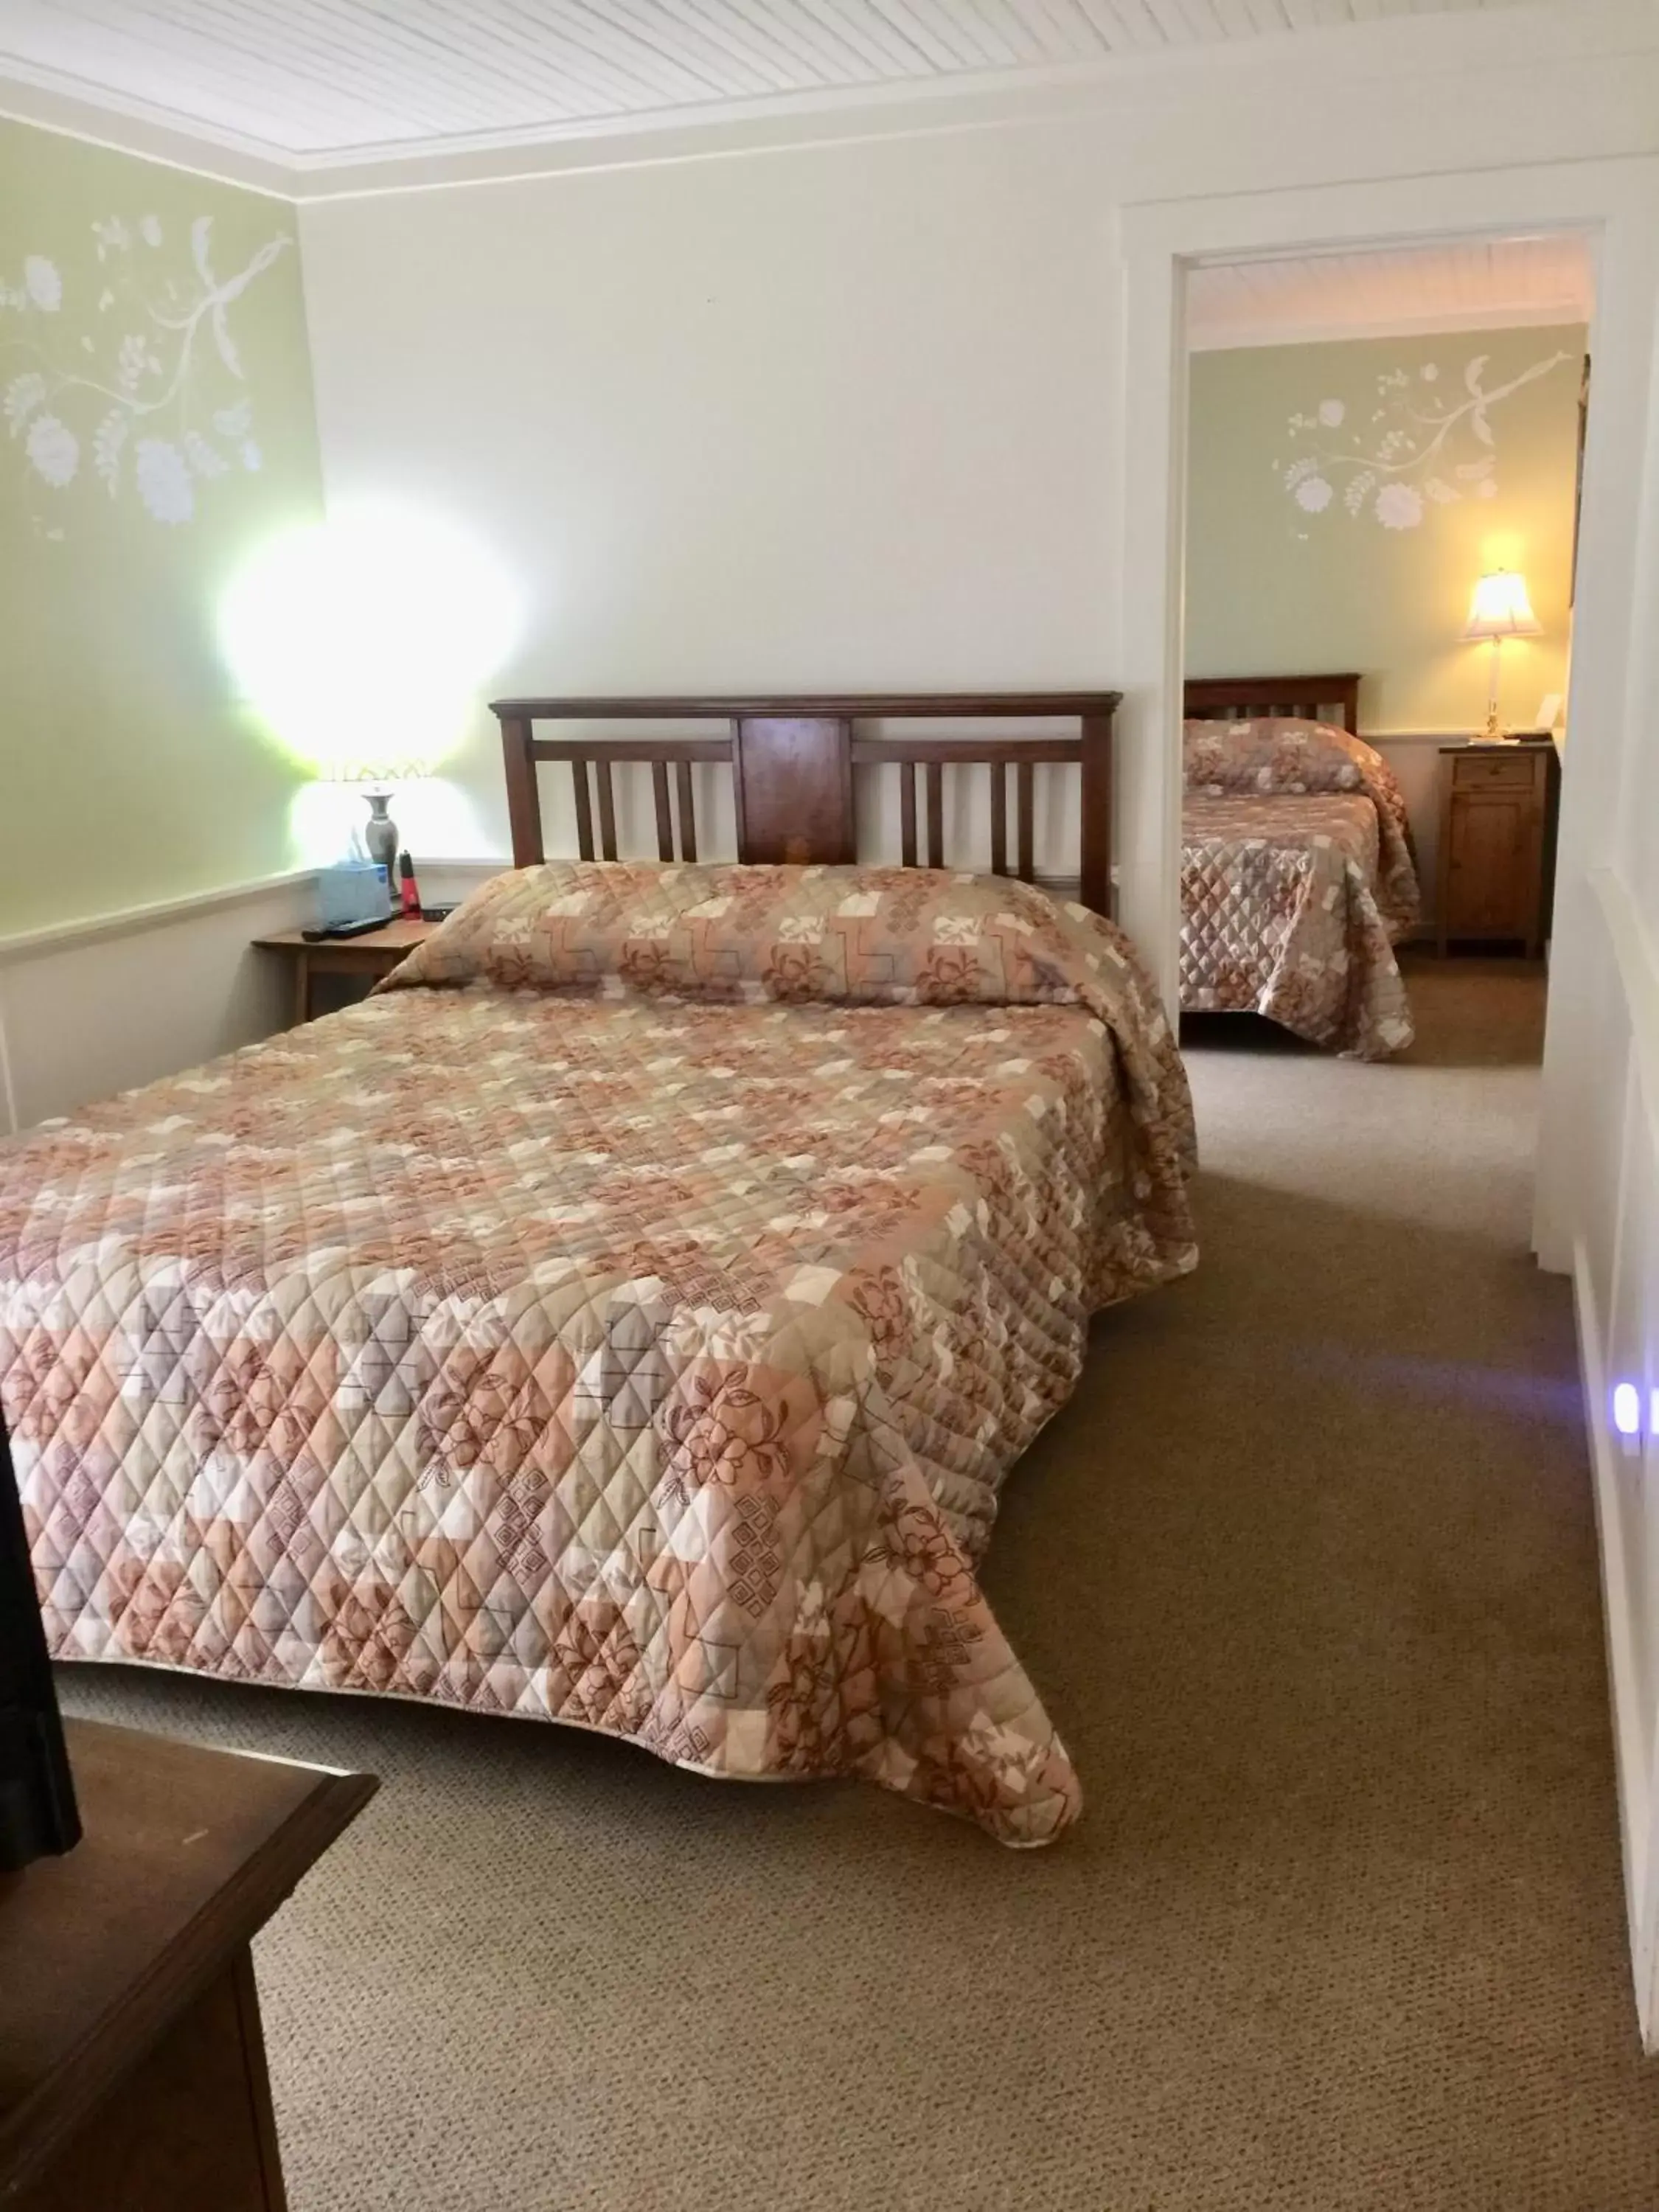 Standard Room With 2 Queen Beds, Room #7 (NO Pets) in Alexander's Lodge